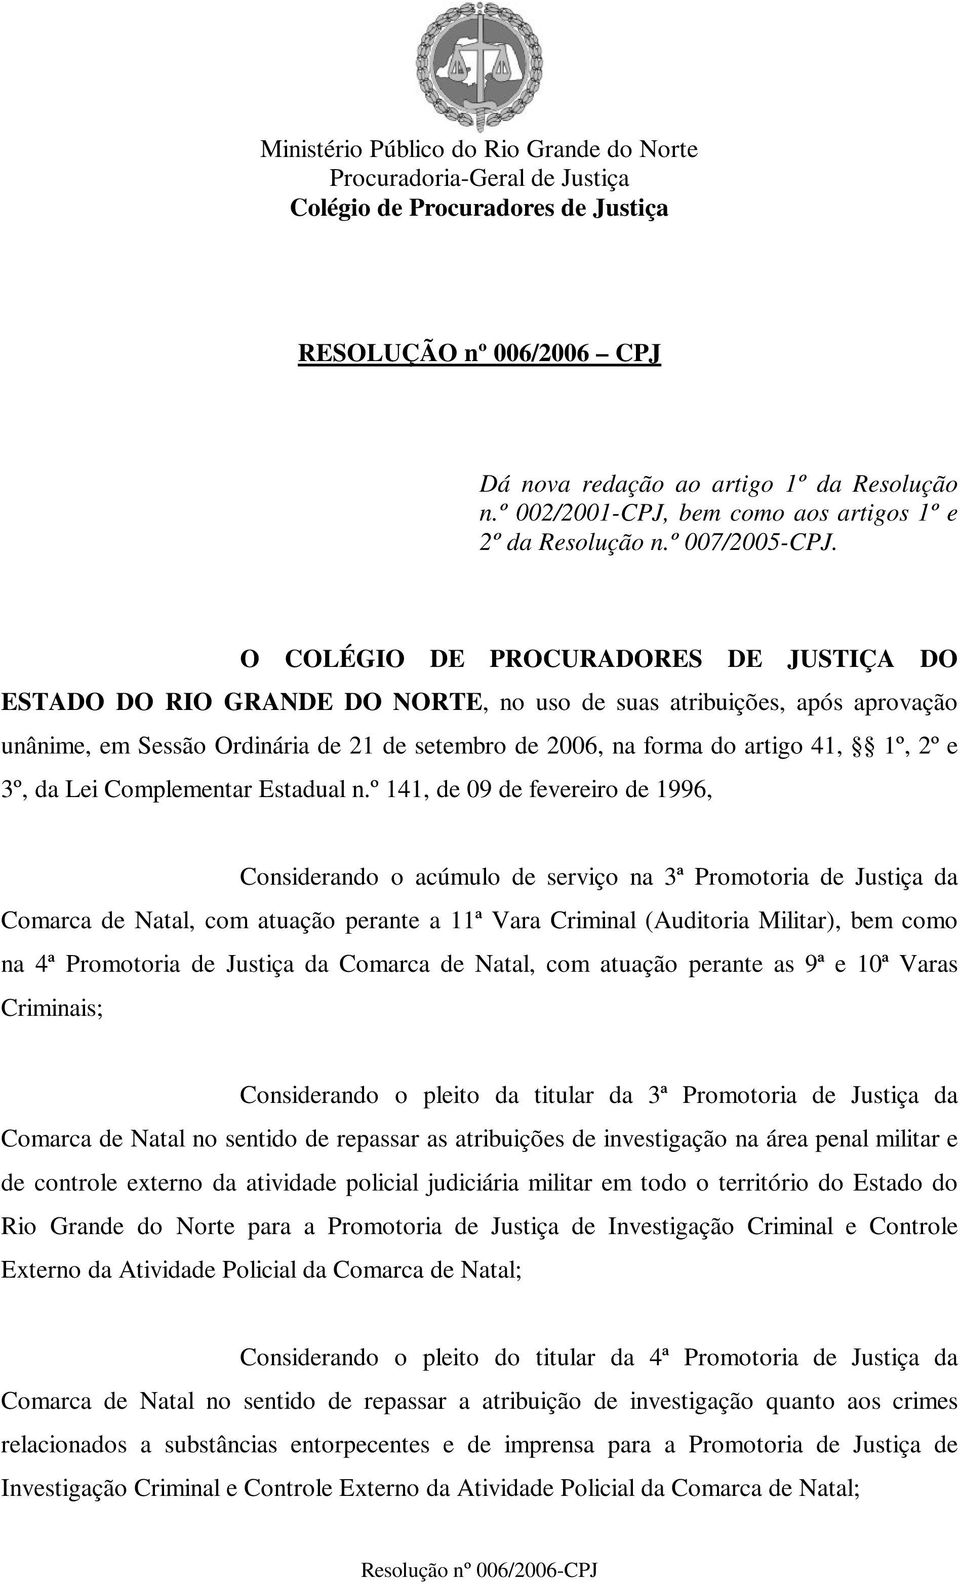 O COLÉGIO DE PROCURADORES DE JUSTIÇA DO ESTADO DO RIO GRANDE DO NORTE, no uso de suas atribuições, após aprovação unânime, em Sessão Ordinária de 21 de setembro de 2006, na forma do artigo 41, 1º, 2º